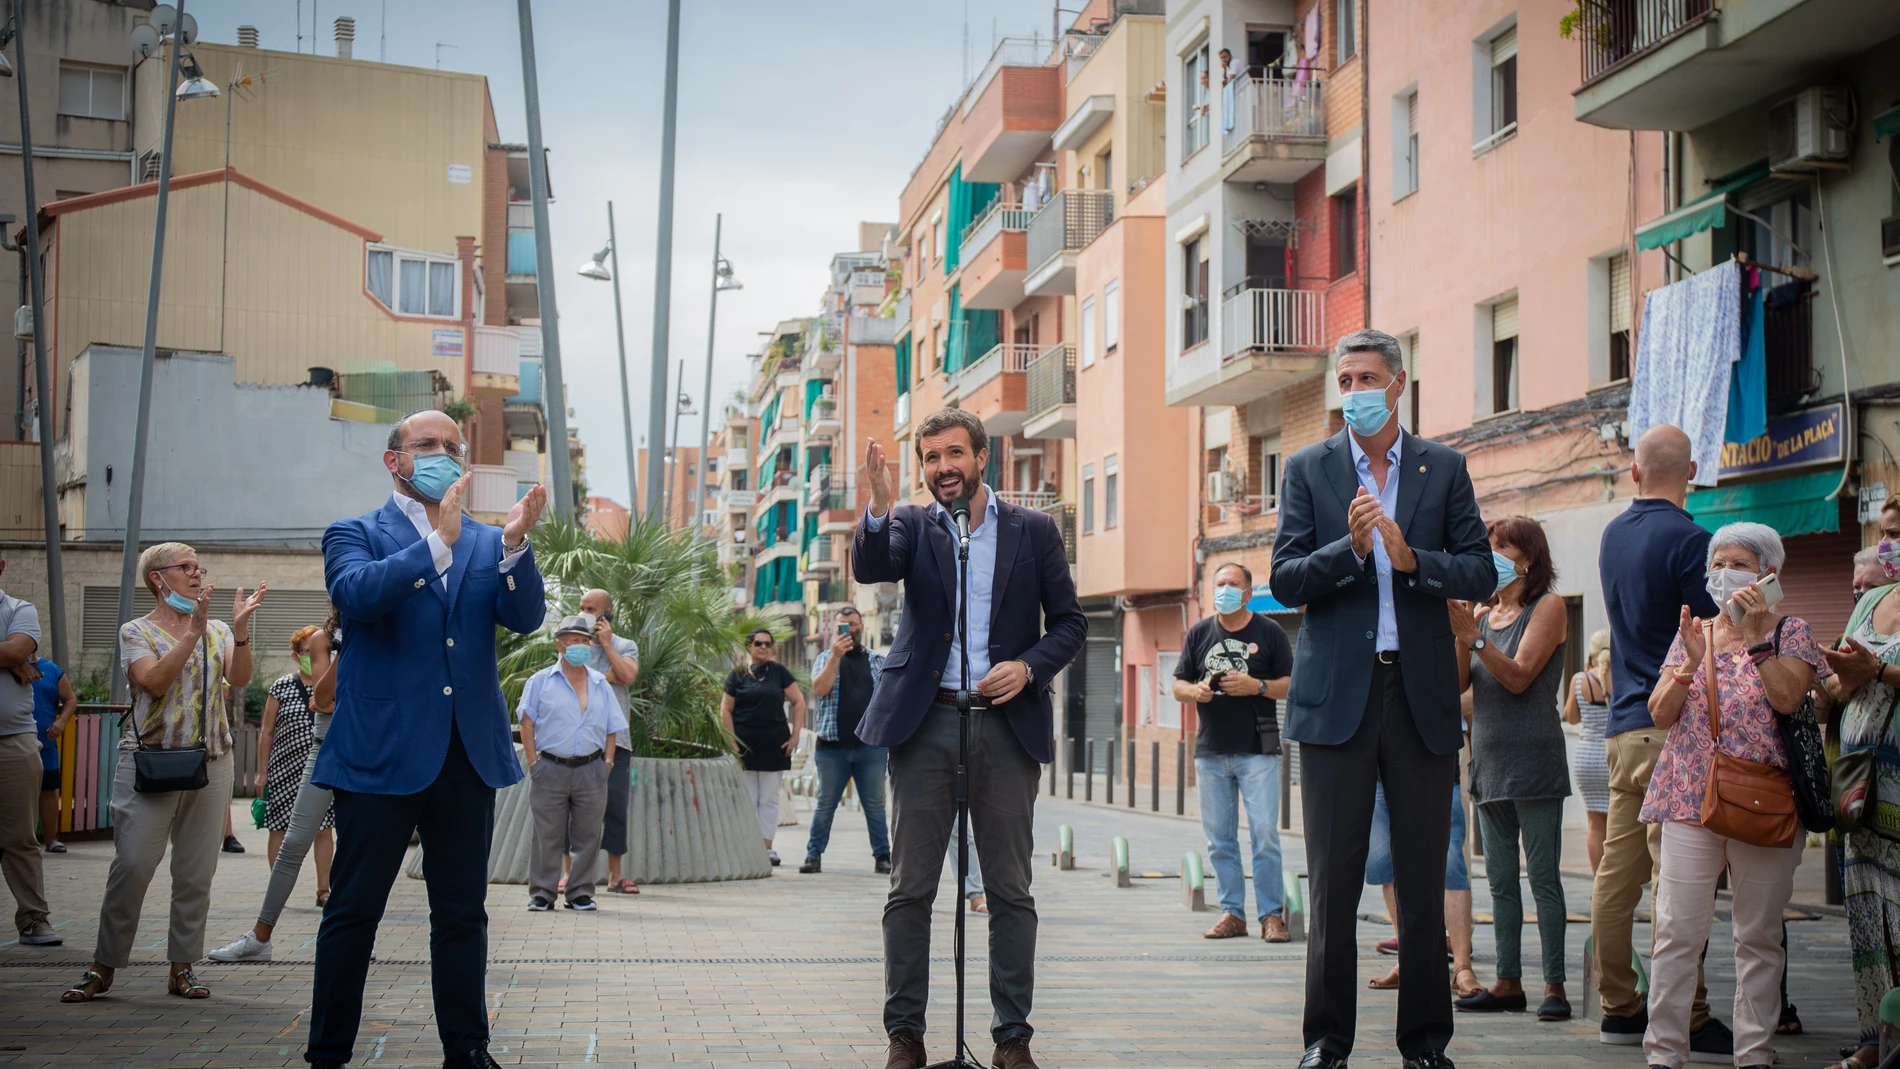 El presidente del PP catalán, Alejandro Fernández, el presidente del Partido Popular, Pablo Casado, y el alcalde de Badalona (Barcelona), Xavier García Albiol en una visita a Badalona el 17 de septiembre de 2020.